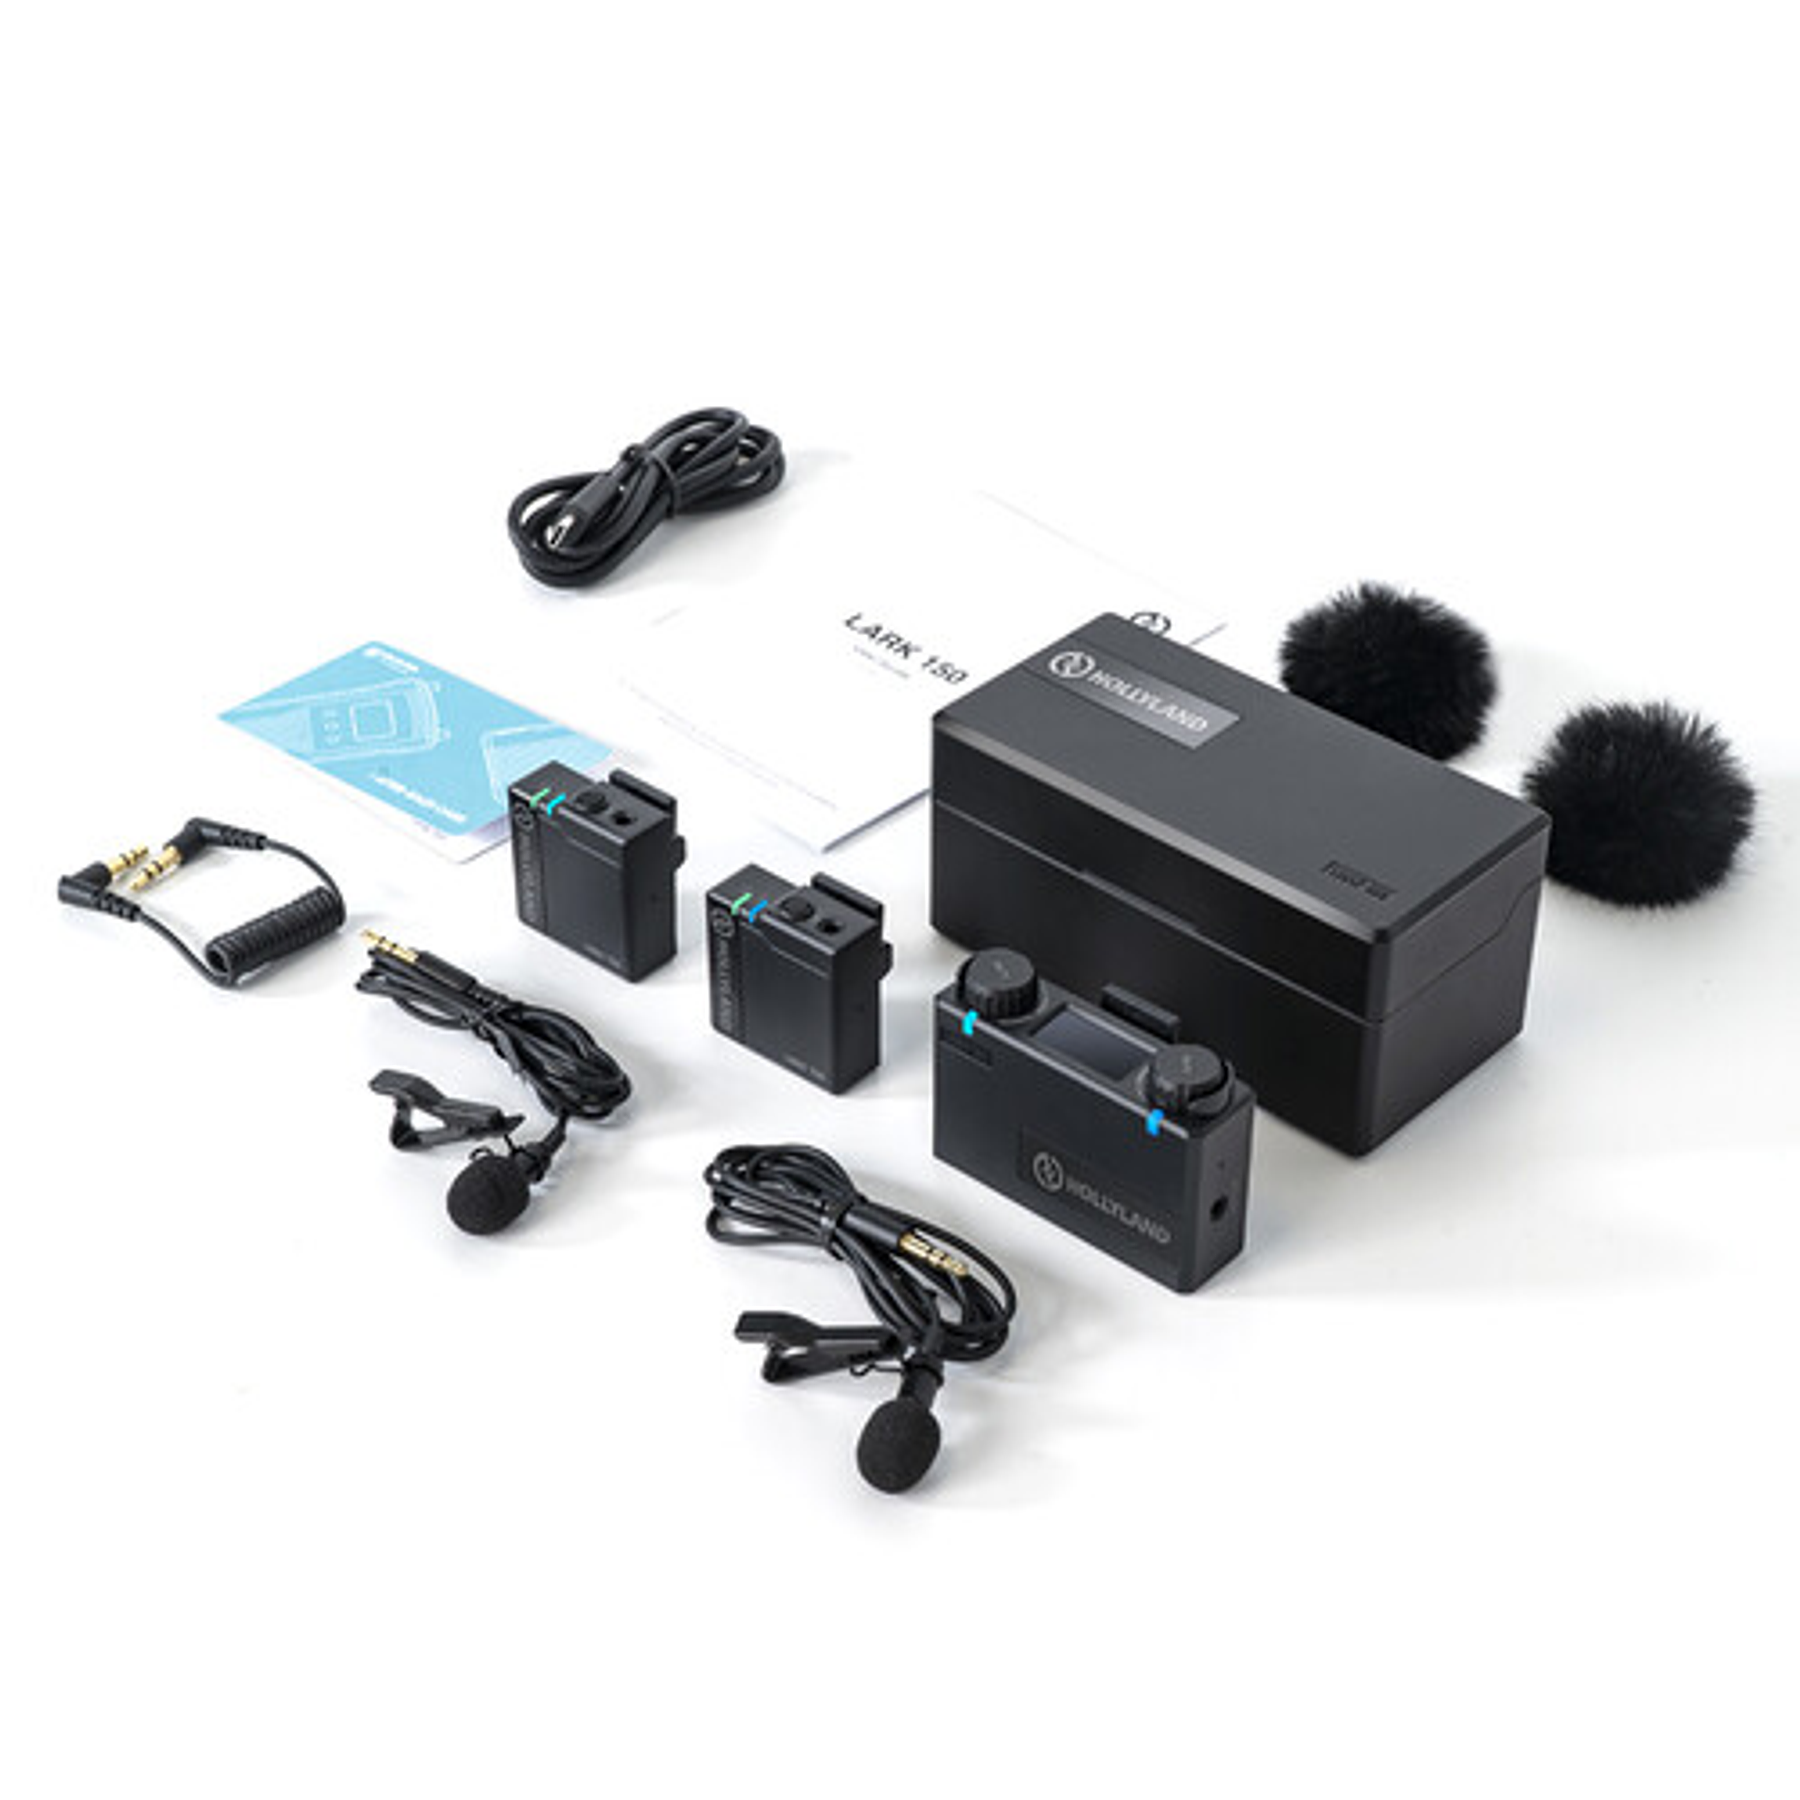 Sistema de micrófono inalámbrico digital compacto para 2 personas Hollyland LARK 